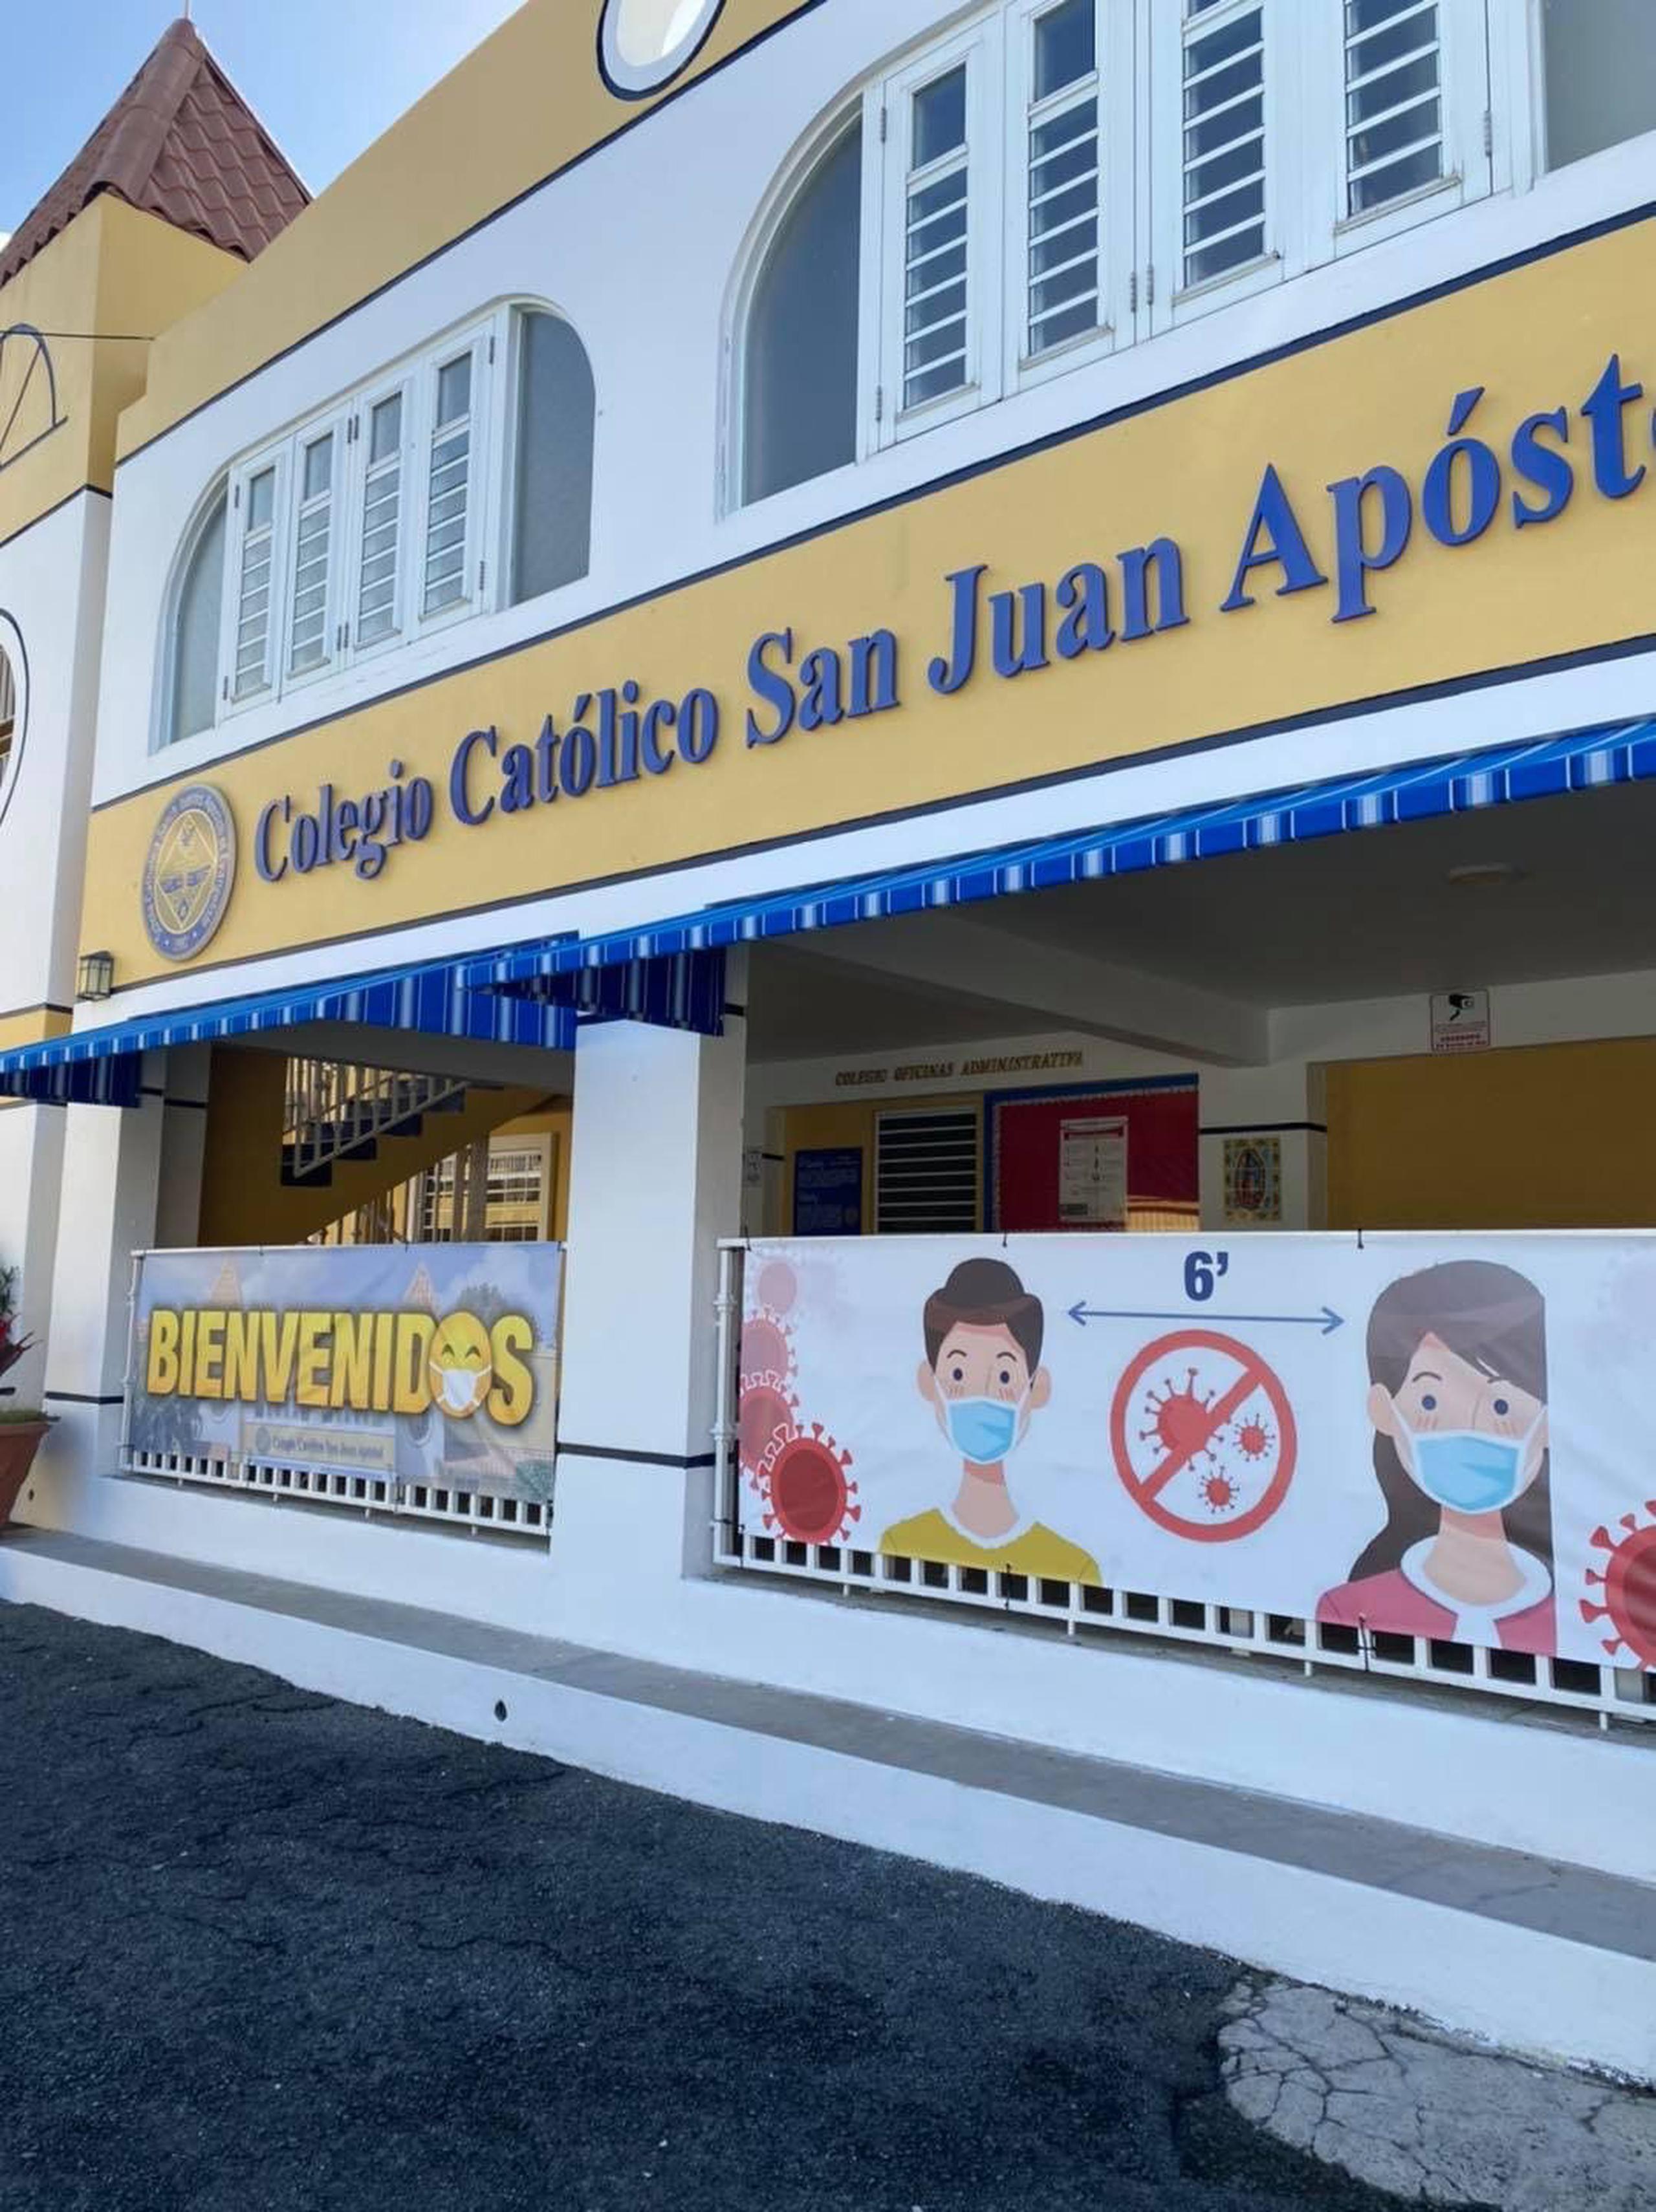 El Colegio Católico San Juan Apóstol ofrece matrícula desde preescolar hasta duodécimo grado.